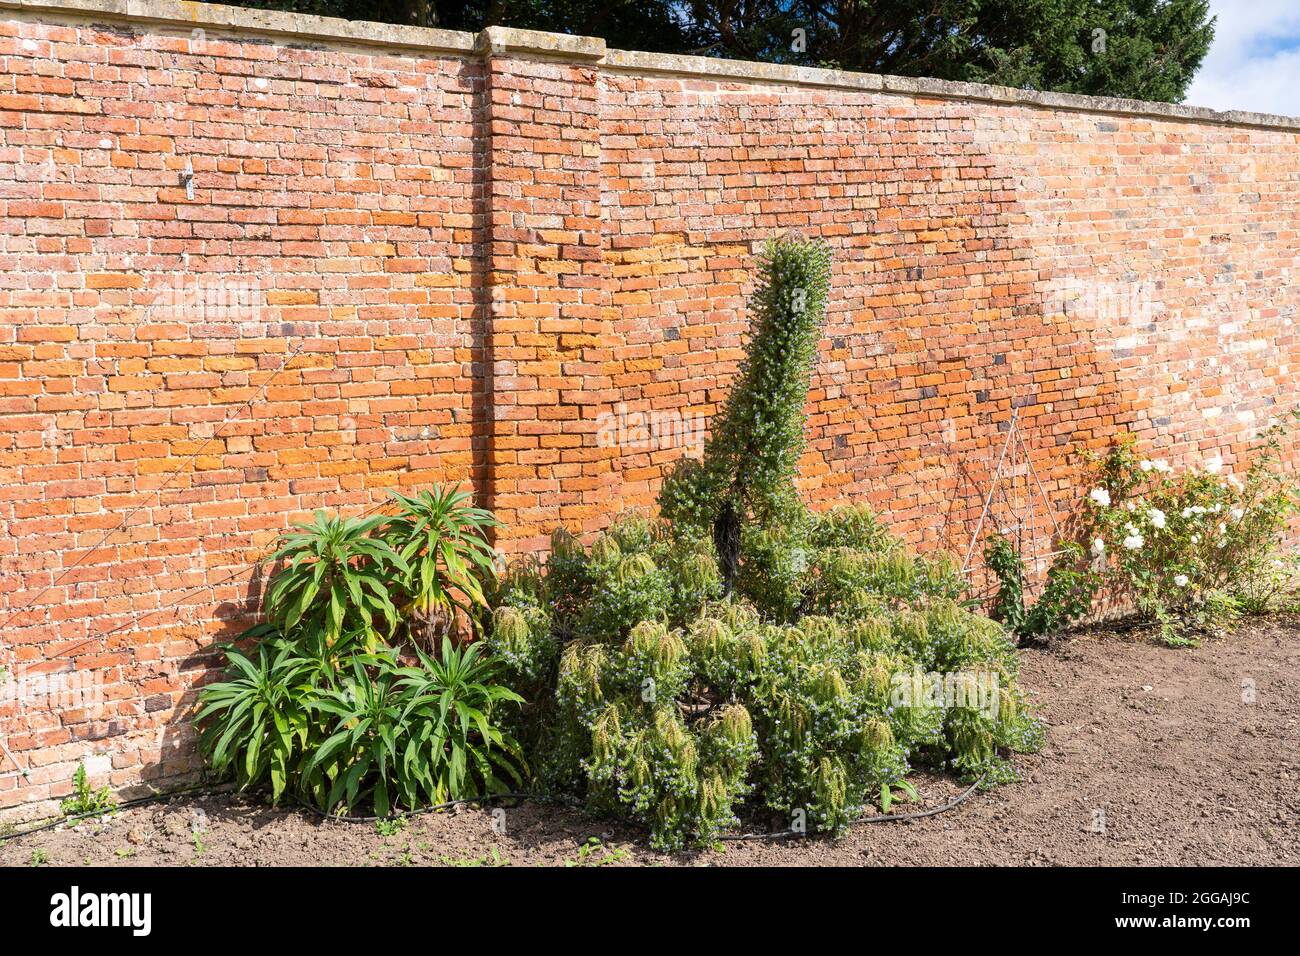 Los candicanos de Echium (orgullo de madeira) crecen en los renovados jardines amurallados georgianos, originalmente diseñados por 'Capability' Brown en Croome Park, Reino Unido Foto de stock